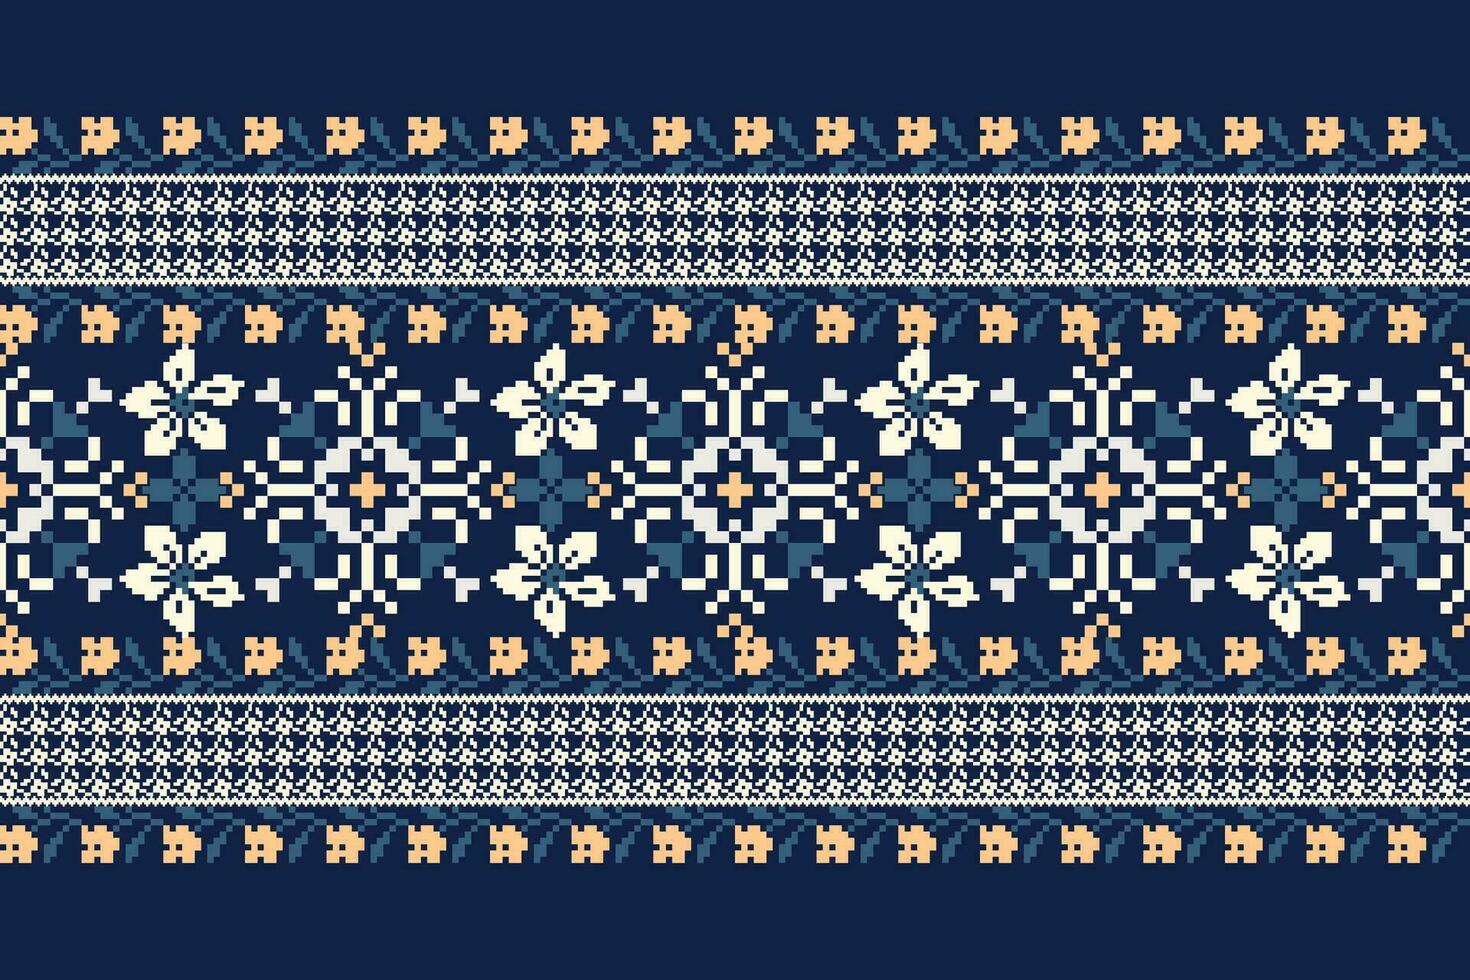 floral cruzar puntada bordado en Armada azul fondo.geometrico étnico oriental modelo tradicional.azteca estilo resumen vector ilustración.diseño para textura,tela,ropa,envoltura,decoración.